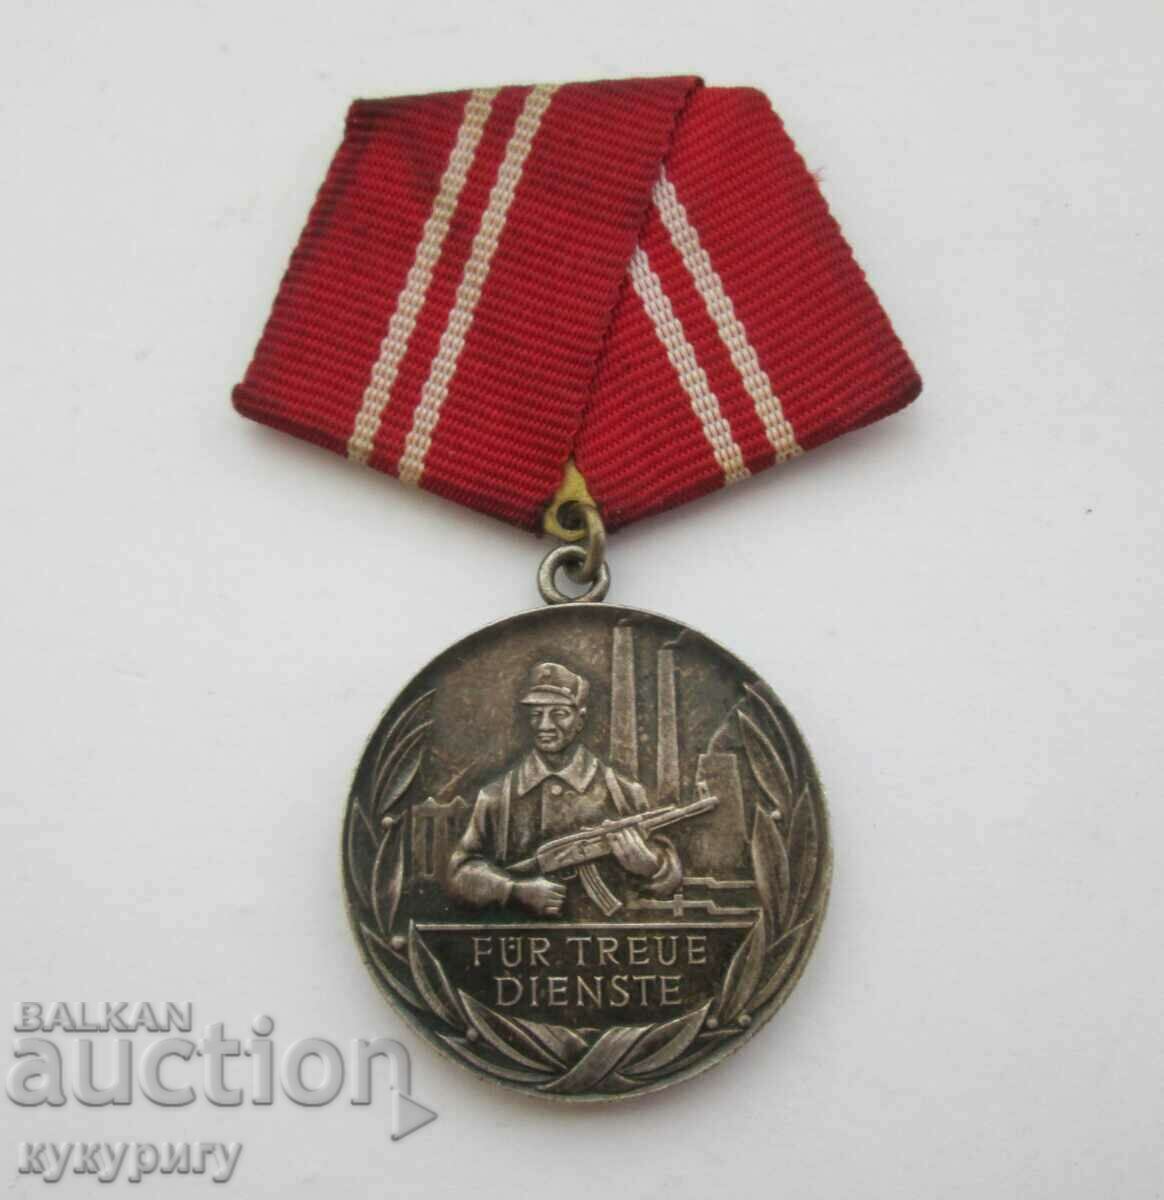 Medalia Armatei Militare Star Soc Germania de Est RDG